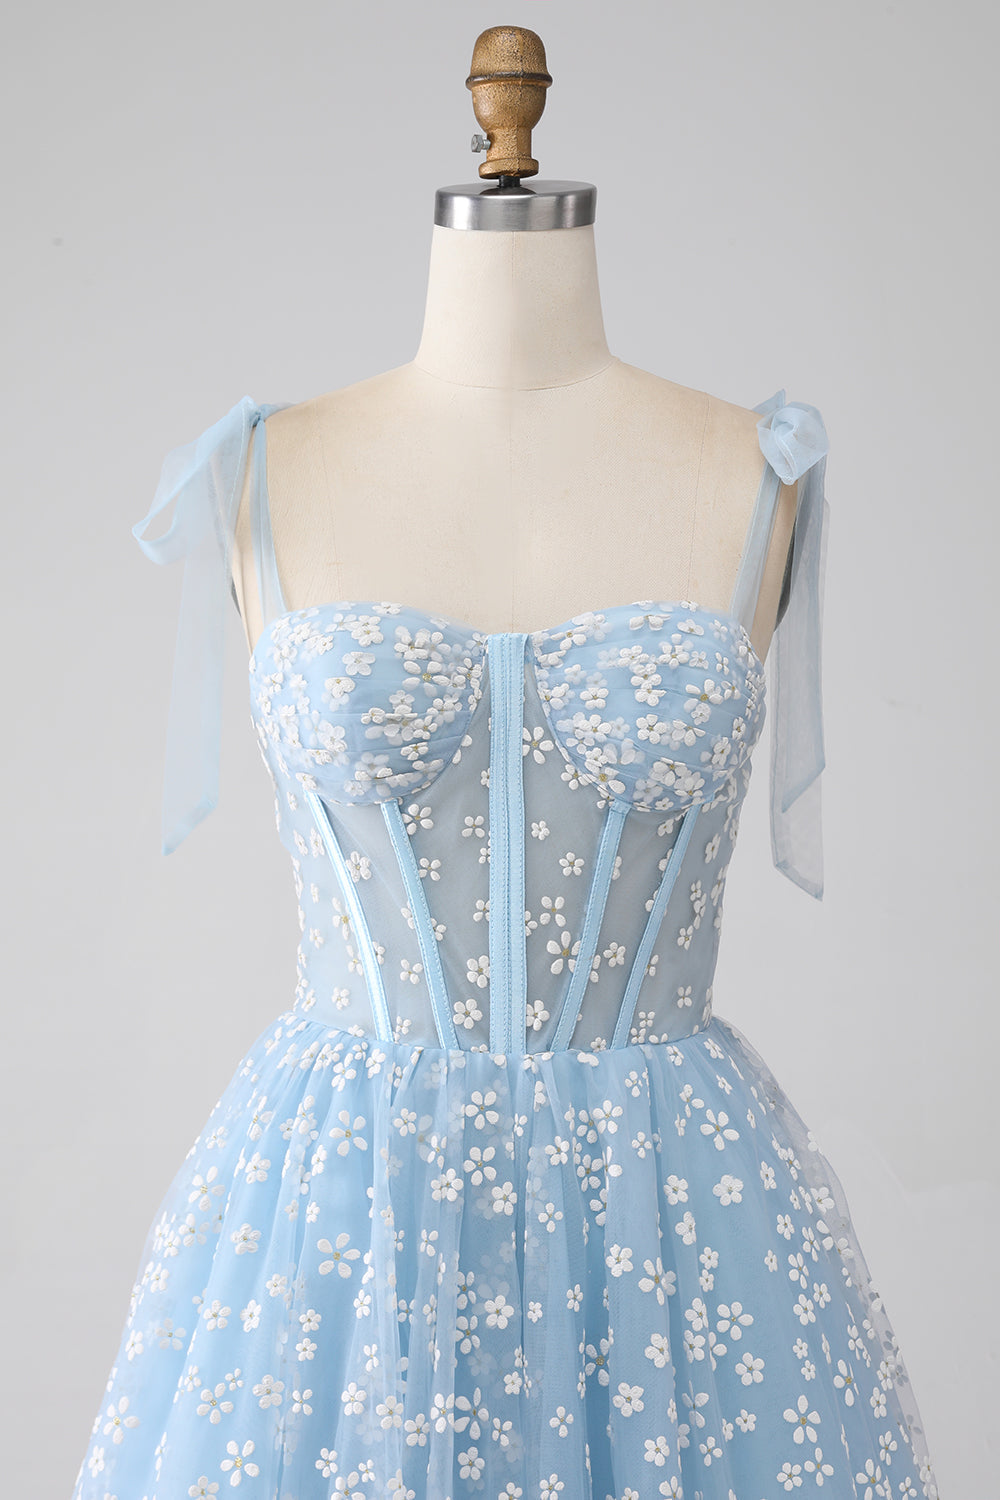 Robe de bal corset bleu ciel à bretelles spaghetti A-ligne